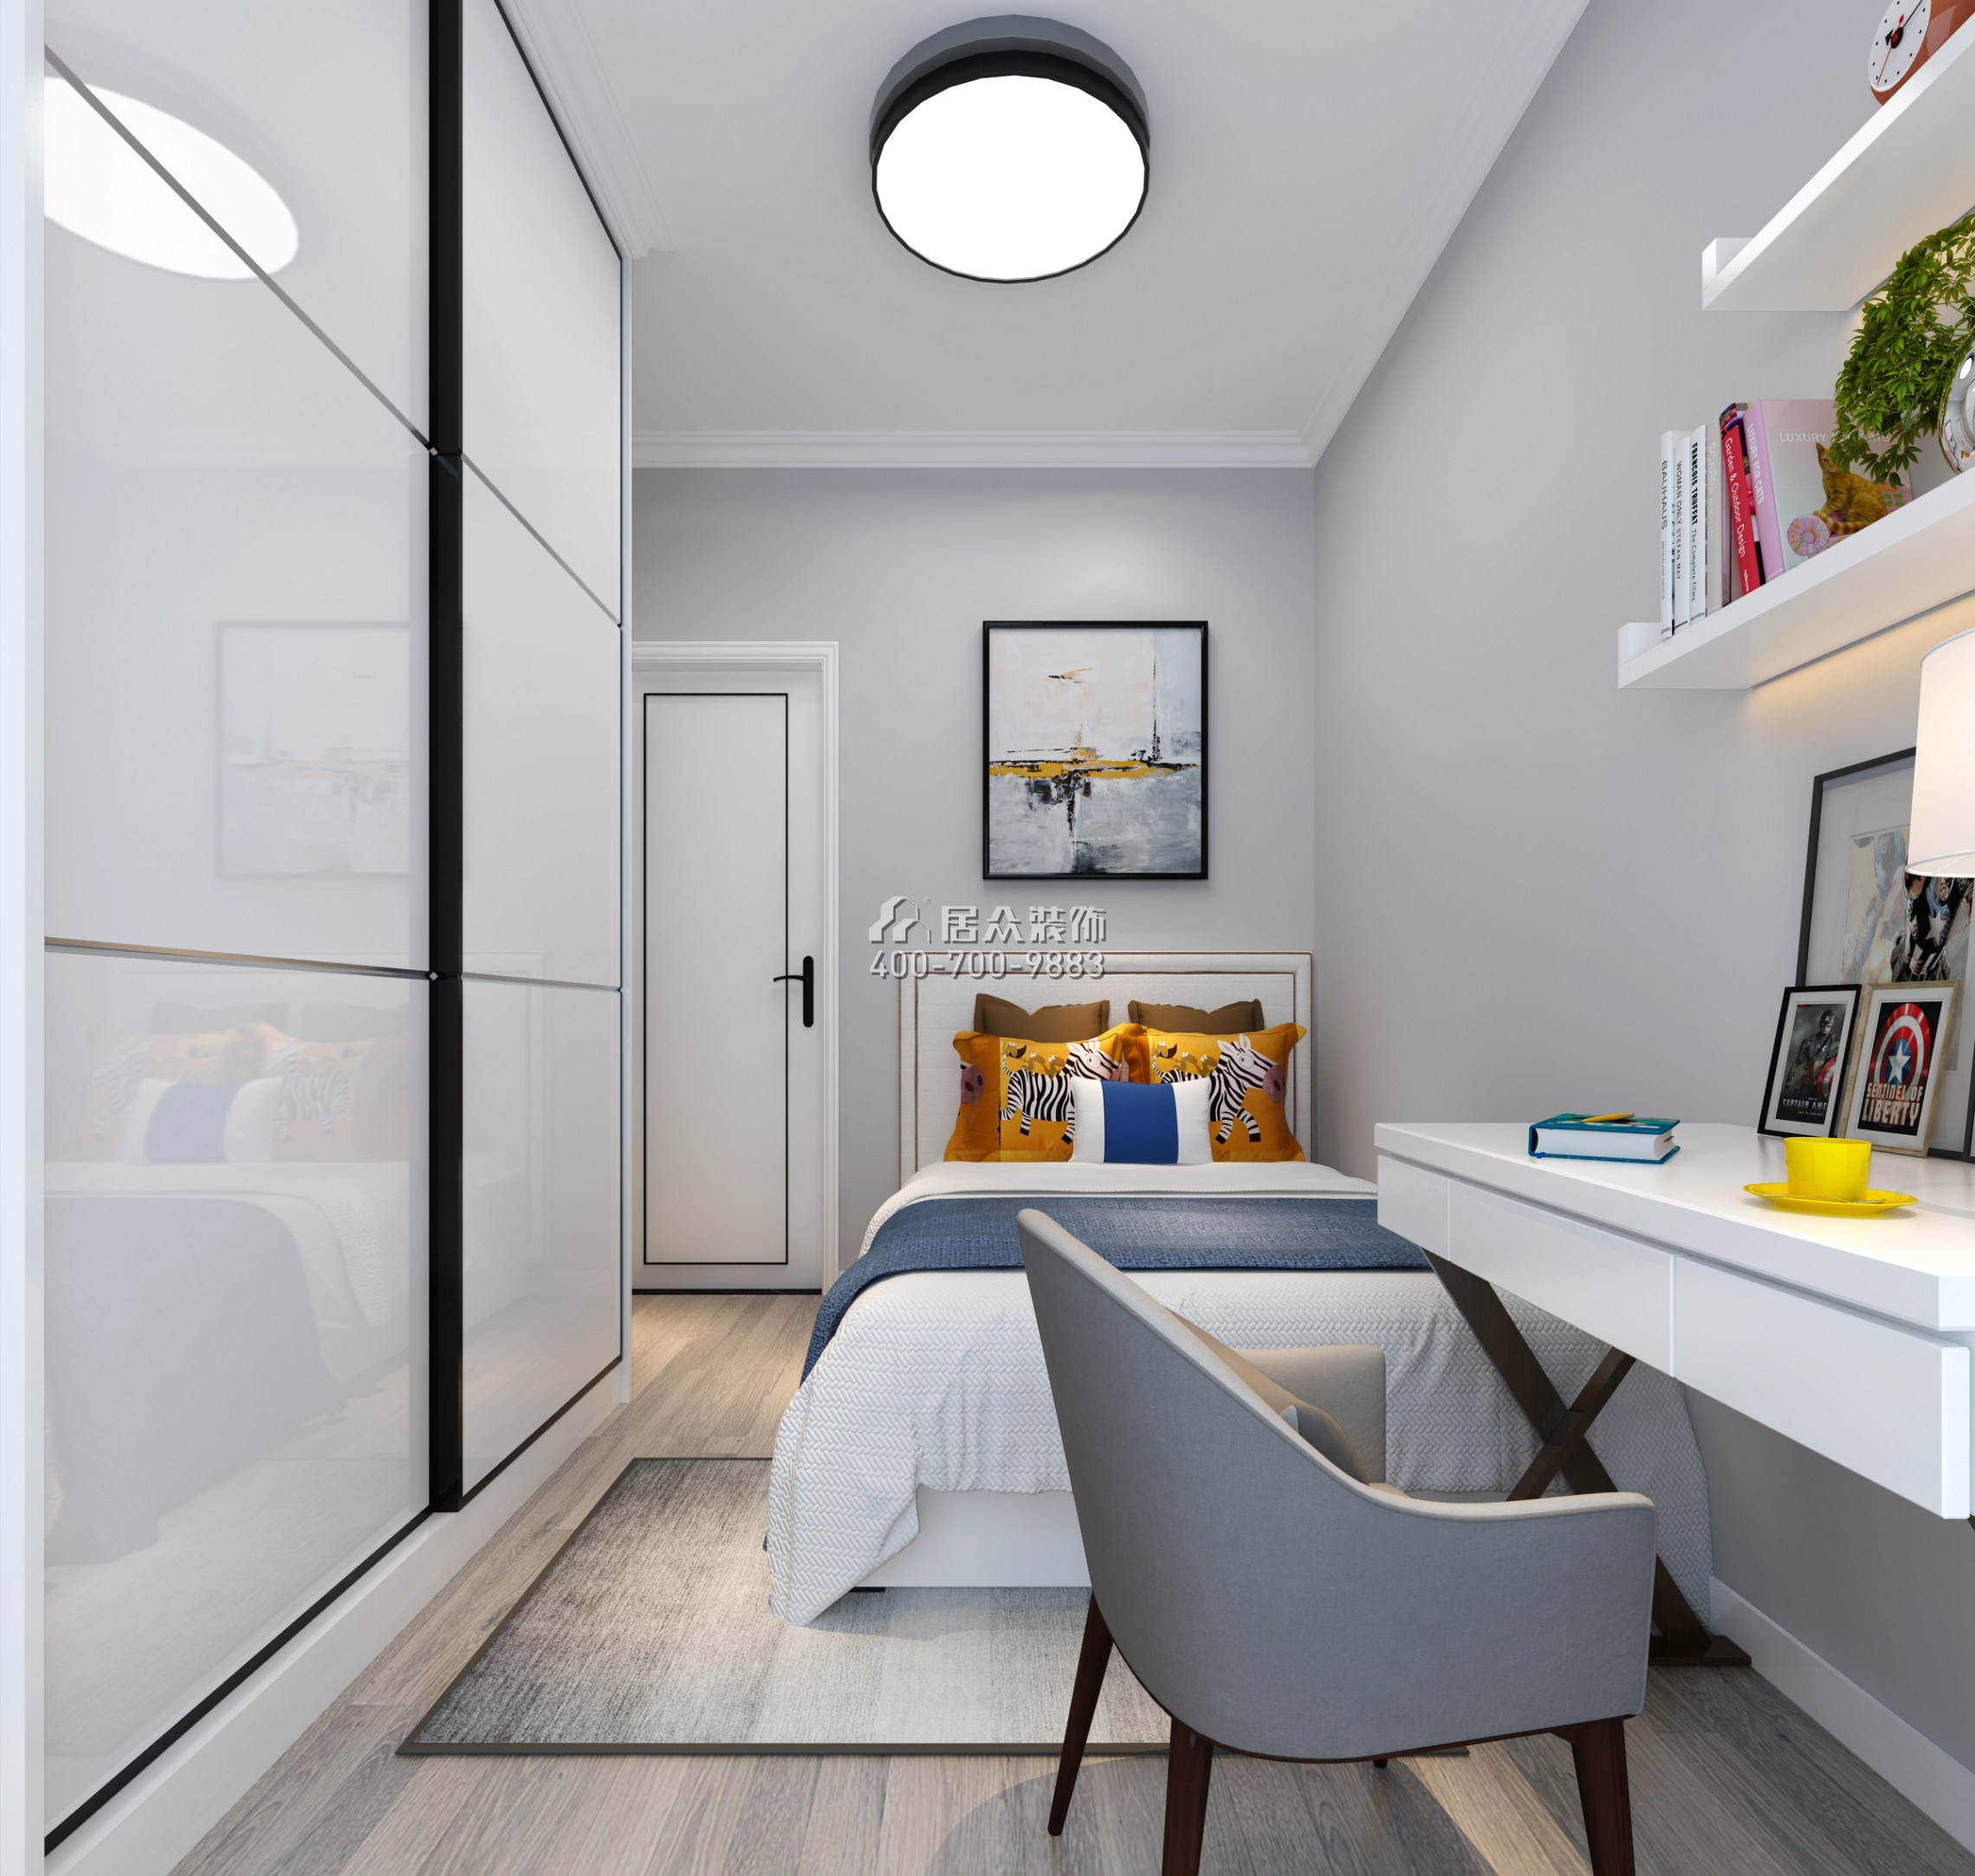 宏发世纪城89平方米现代简约风格平层户型卧室装修效果图